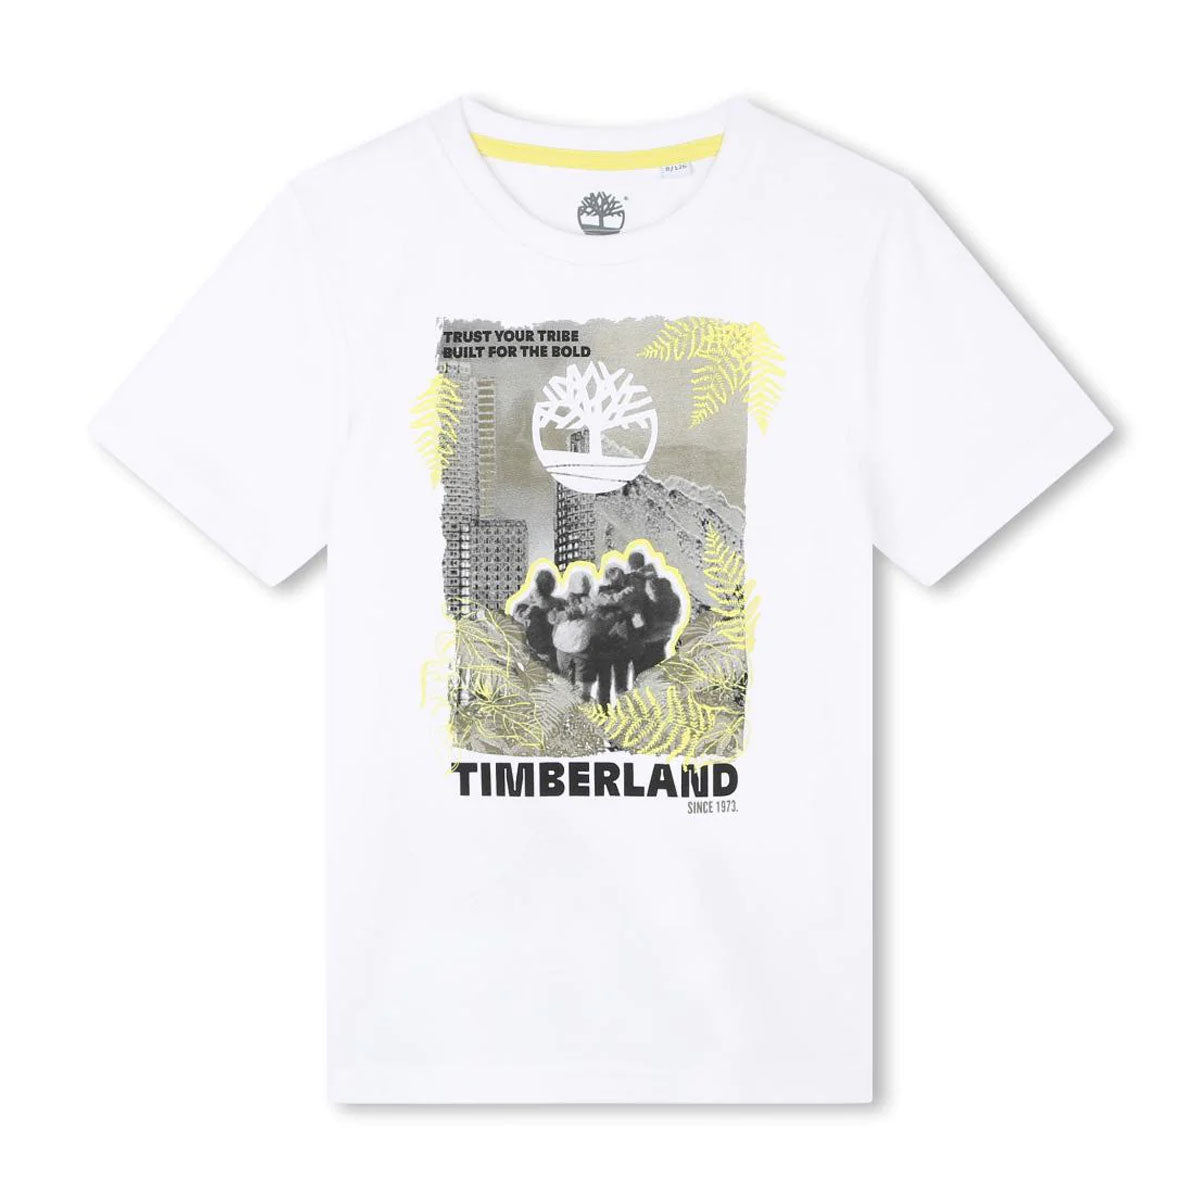 חולצת טי שרט TIMBERLAND TRUST YOUR TRIBE לילדים